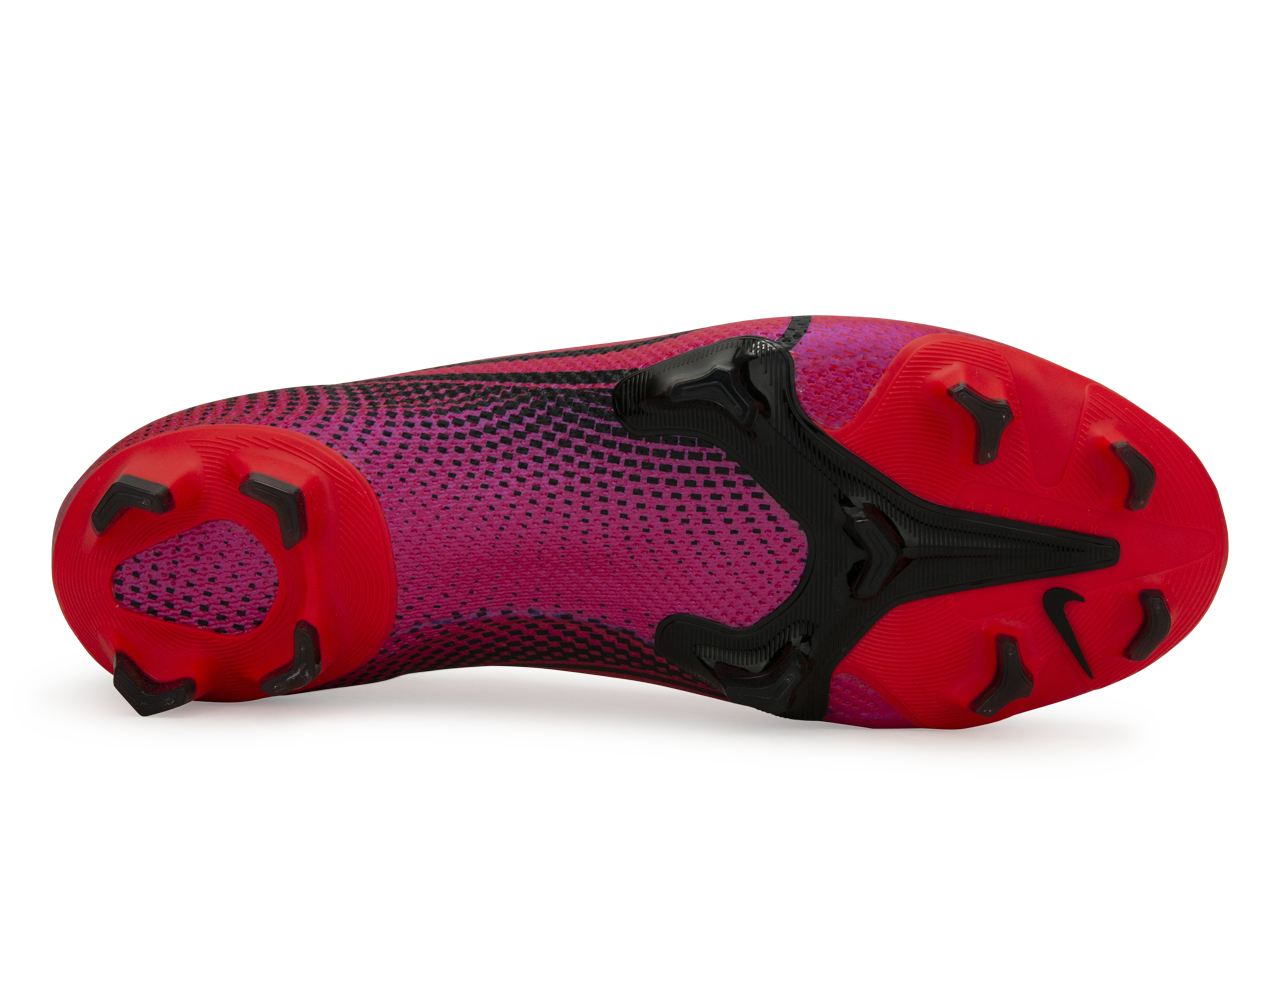 Nike Mercurial Vapor 13 Elite FG - Flash Crimson Pack - SoccerPro